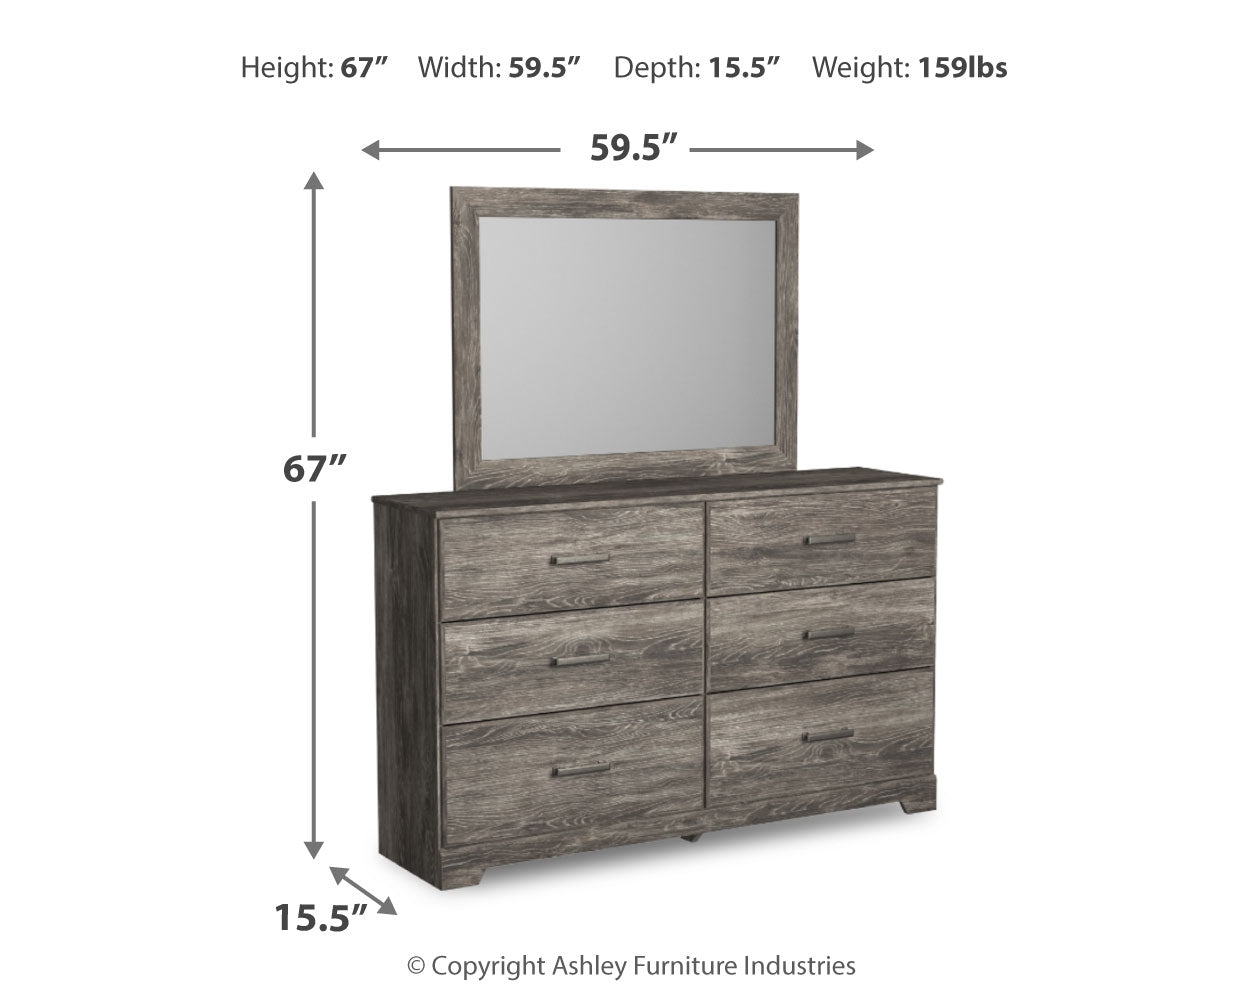 Ralinksi Full Panel Bedroom Set with Dresser and Mirror